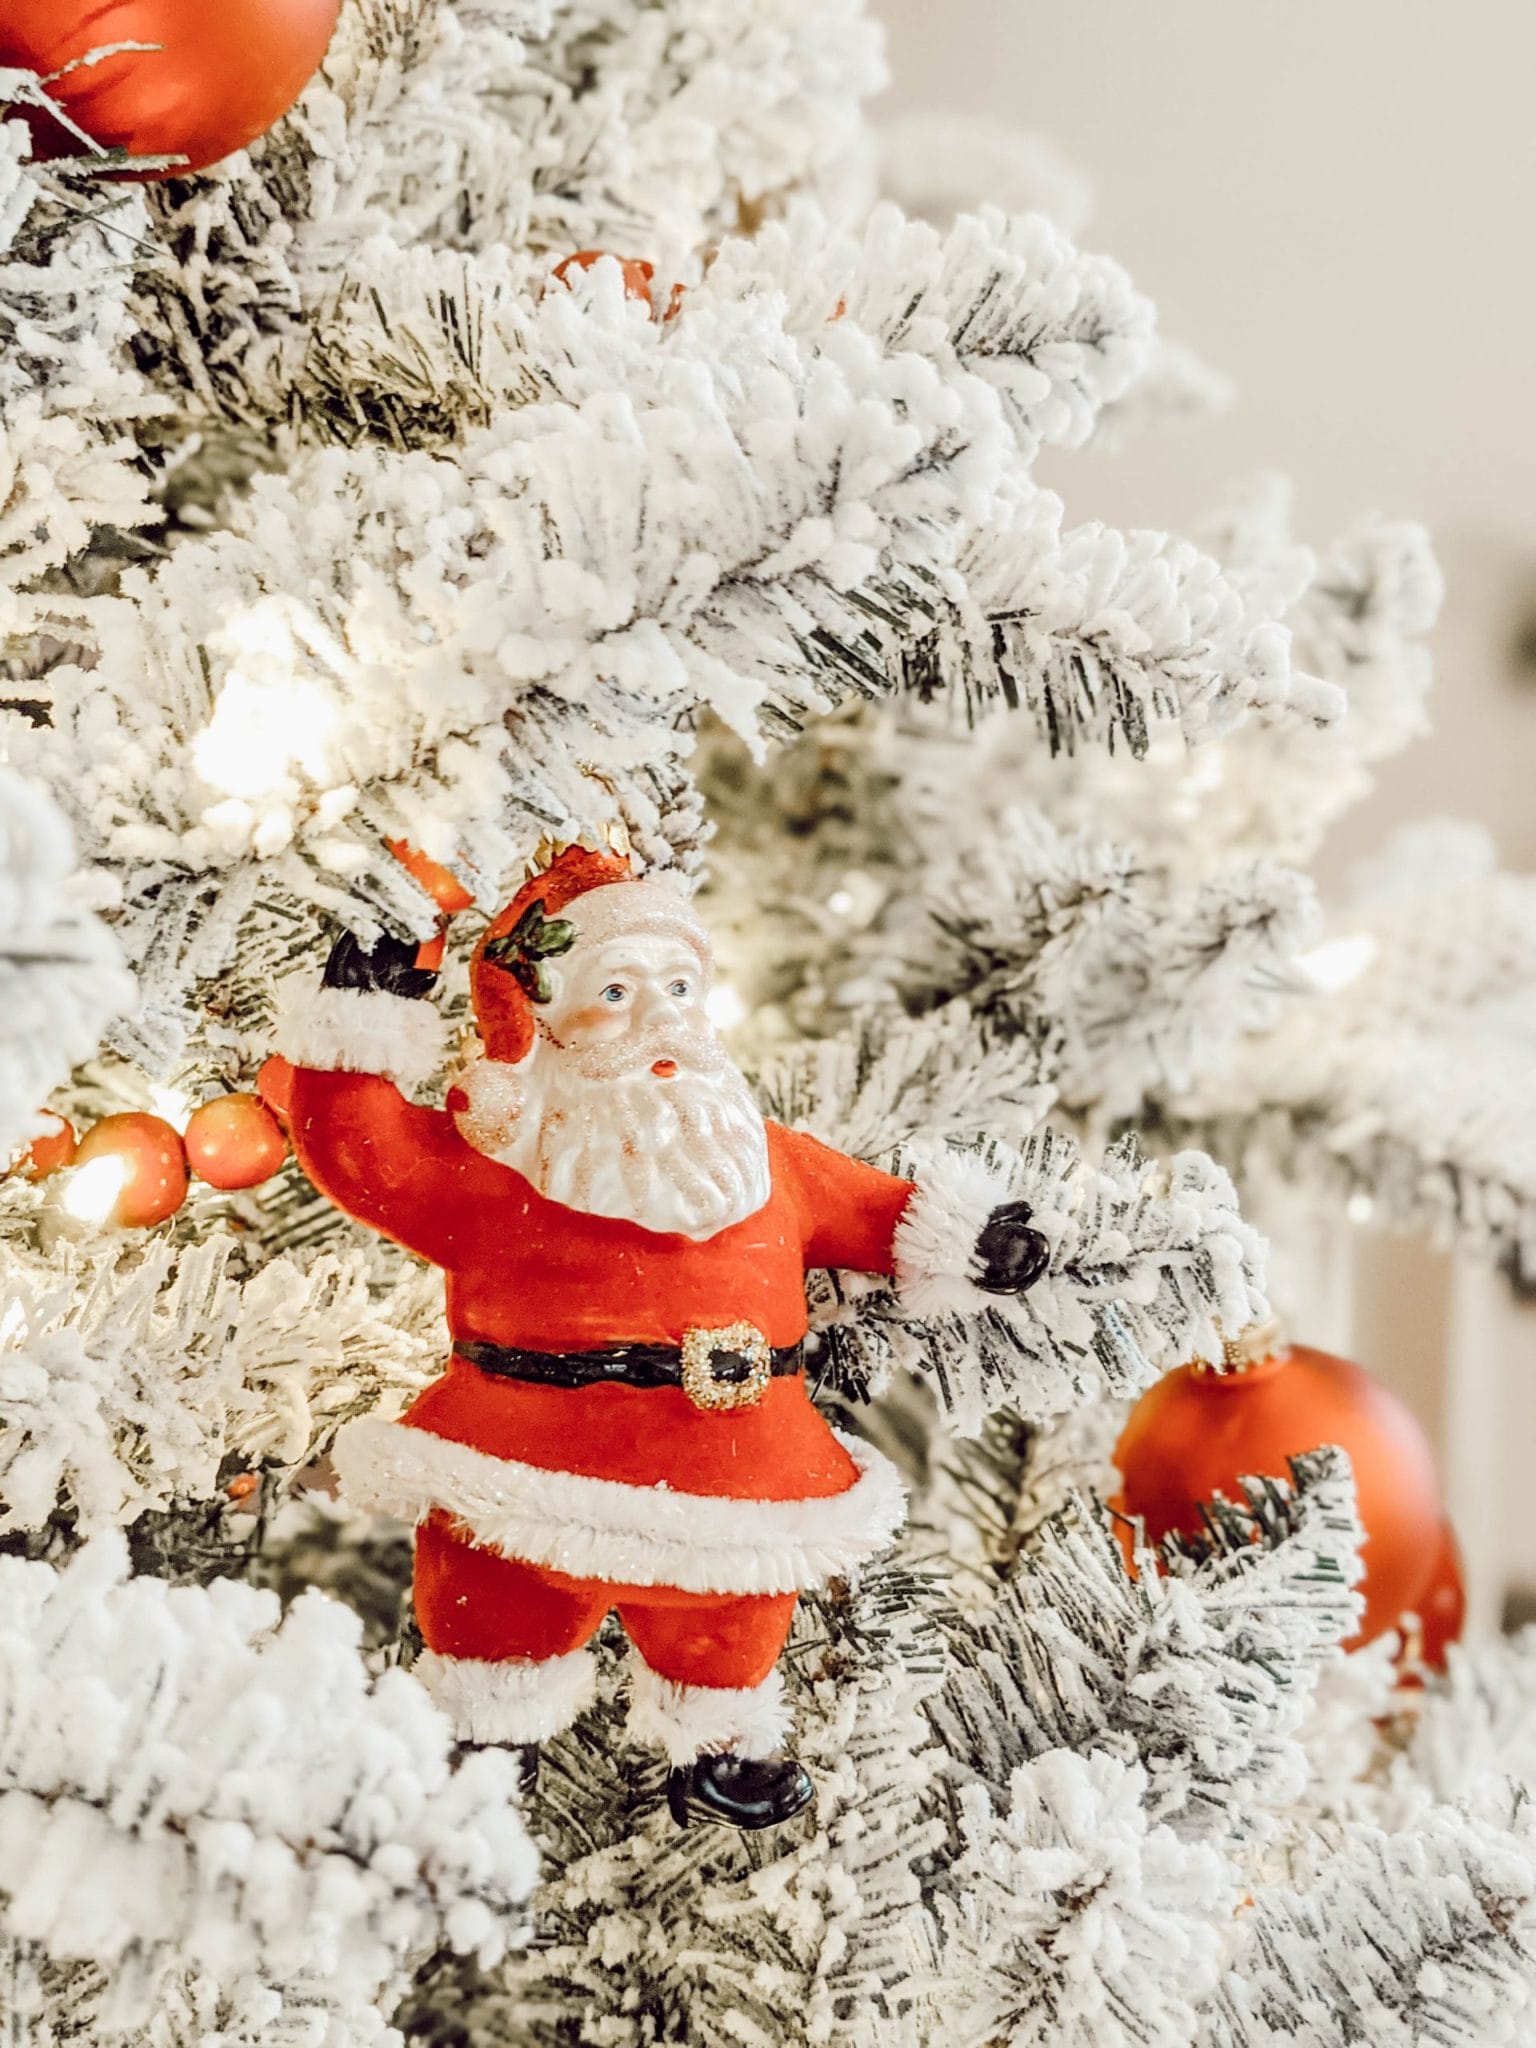 Holiday Home Tour: The Christmas Tree Decor